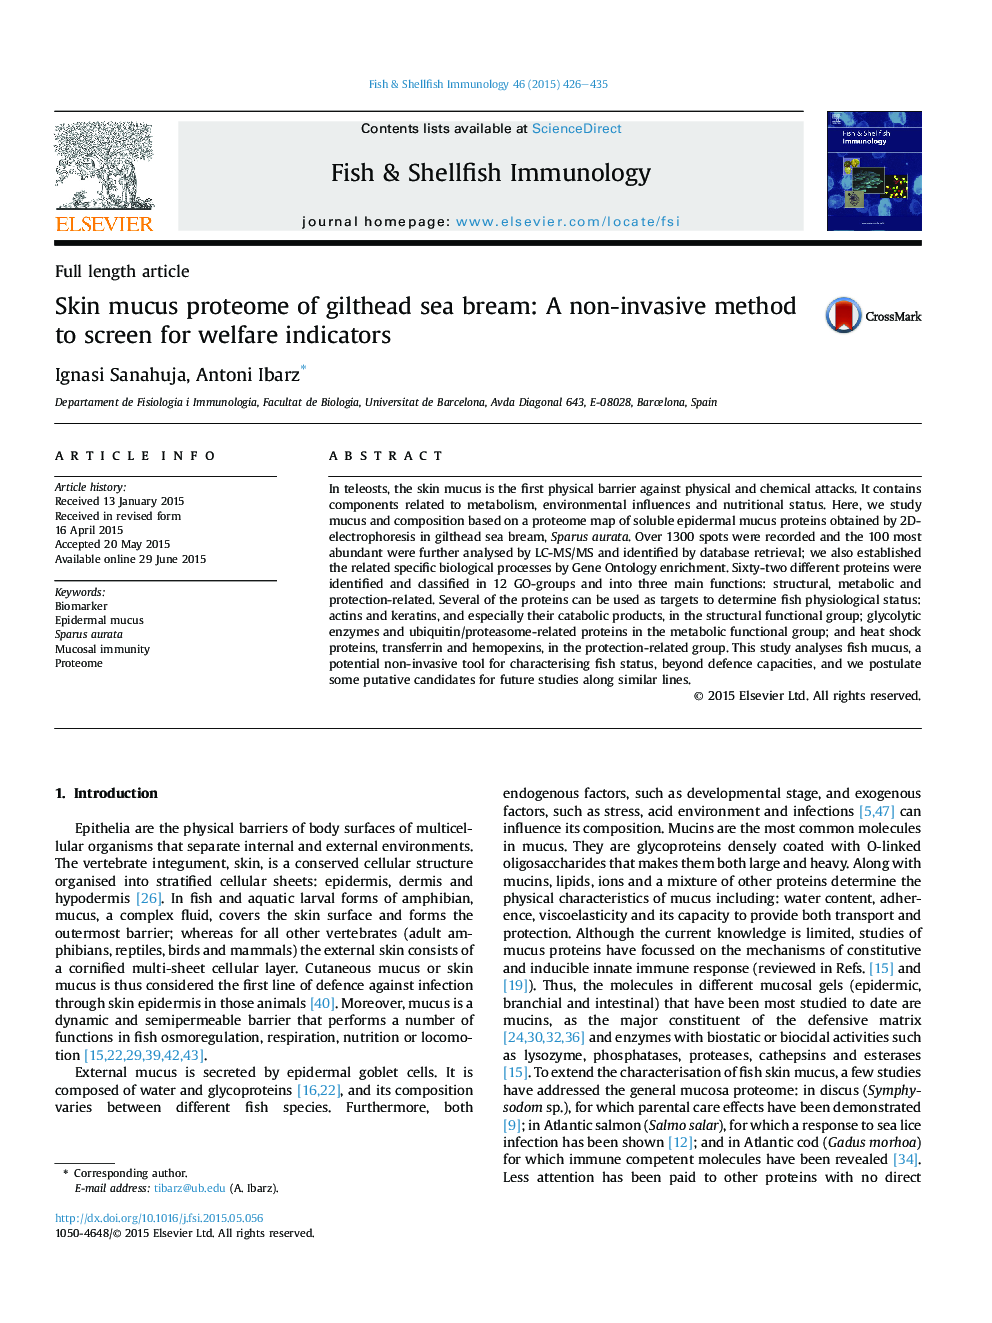 Skin mucus proteome of gilthead sea bream: A non-invasive method to screen for welfare indicators